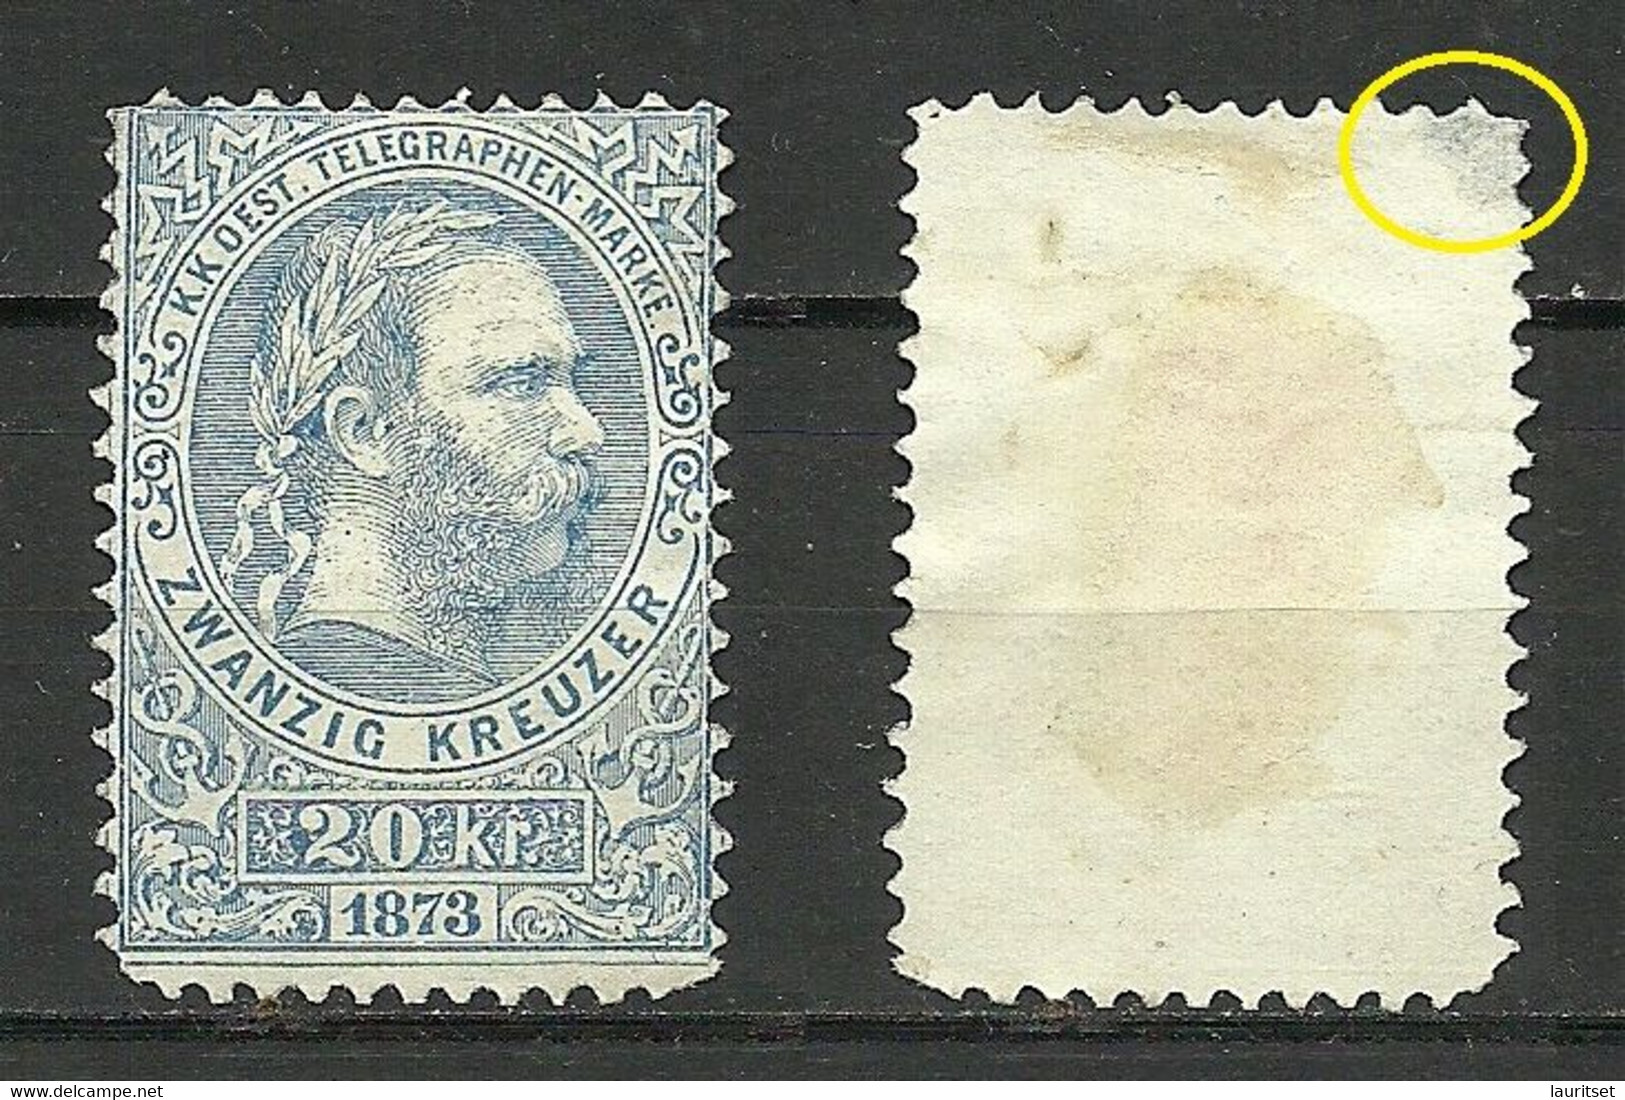 Österreich Austria 1873 Keiser Franz Joseph Telegraphenmarke 20 Kr. (*) Telegraph NB! Thinned Upper Corner! - Télégraphe